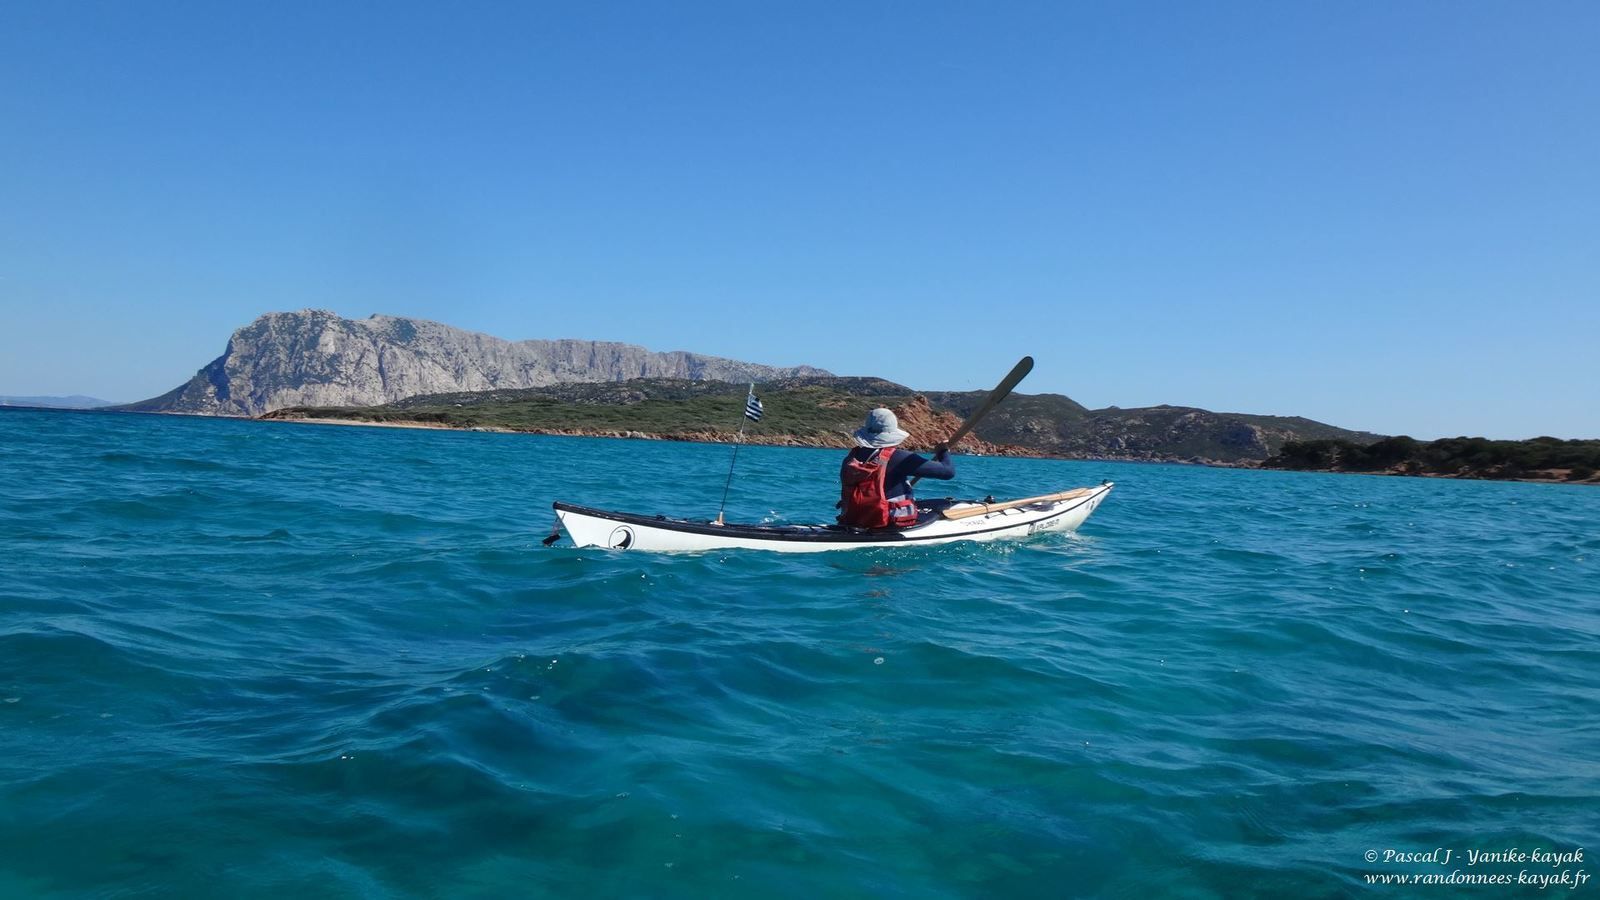 Sardegna 2019, una nuova avventura - Chapitre 11 - Capo Coda Cavallo vers lagune de San Teodoro via Piccola Tahiti